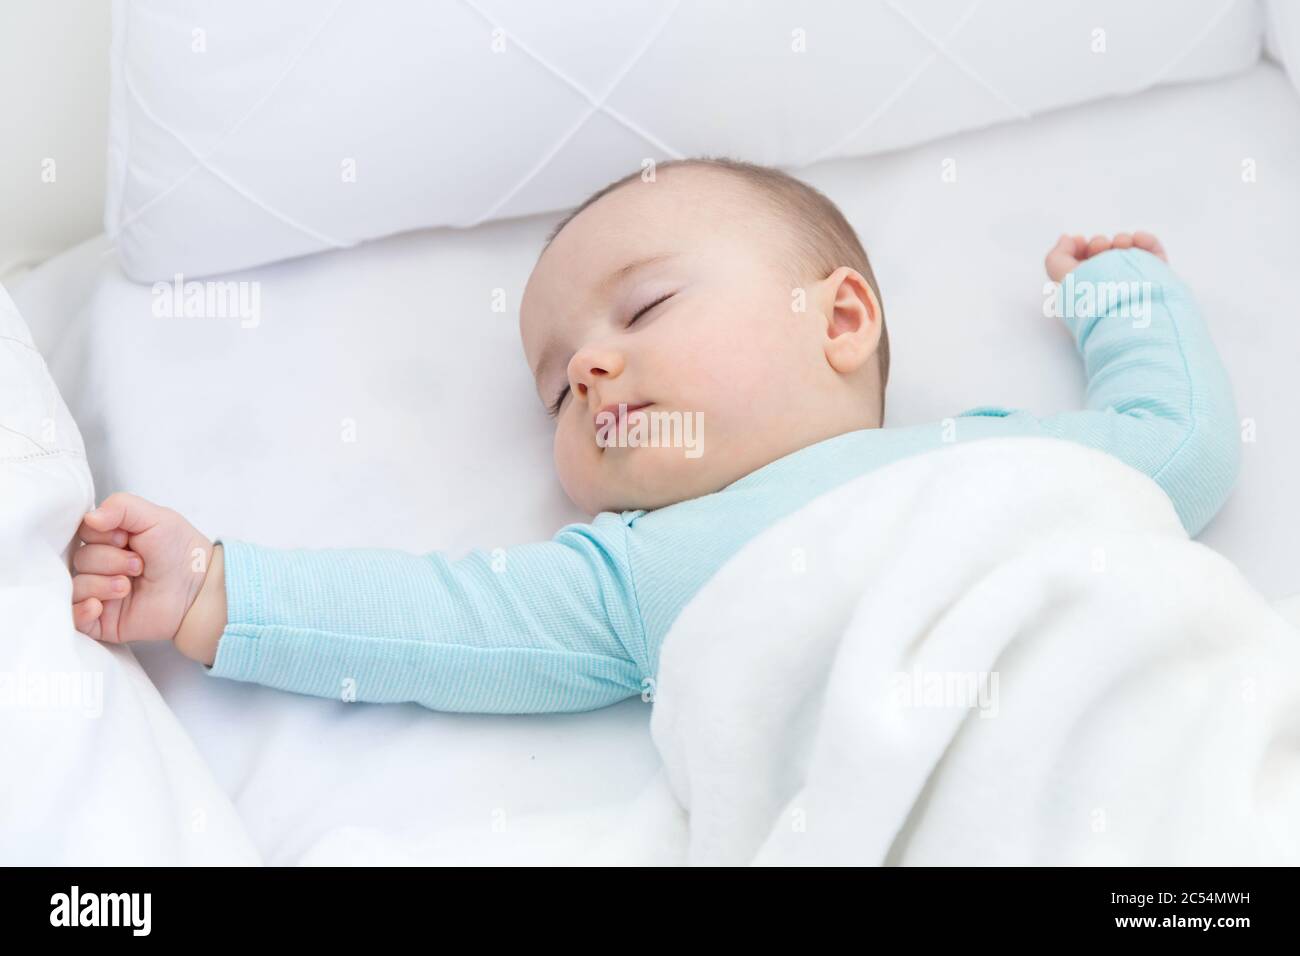 Bebé durmiendo con un chupete aparte. Pijama azul claro y sábanas blancas. Foto de stock